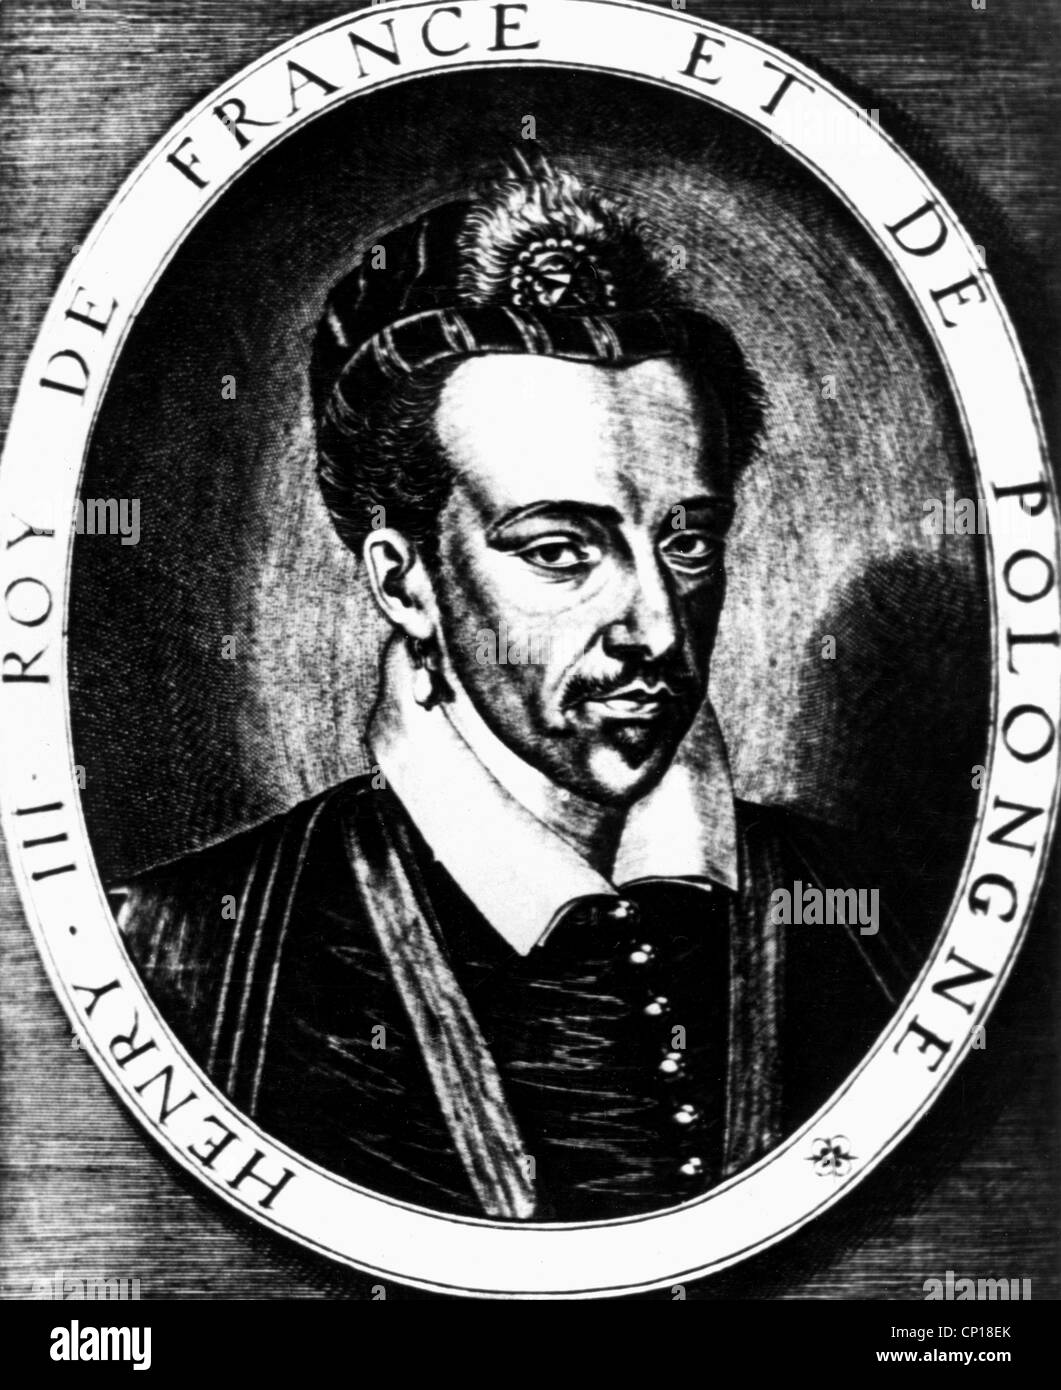 Enrico III, 19.9.1551 - 2.8 1589, Re di Francia 30.5.1574 - 2.8.1589, ritratto, incisione su rame di Thomas de Leu, XVI secolo, , artista del diritto d'autore non deve essere cancellata Foto Stock